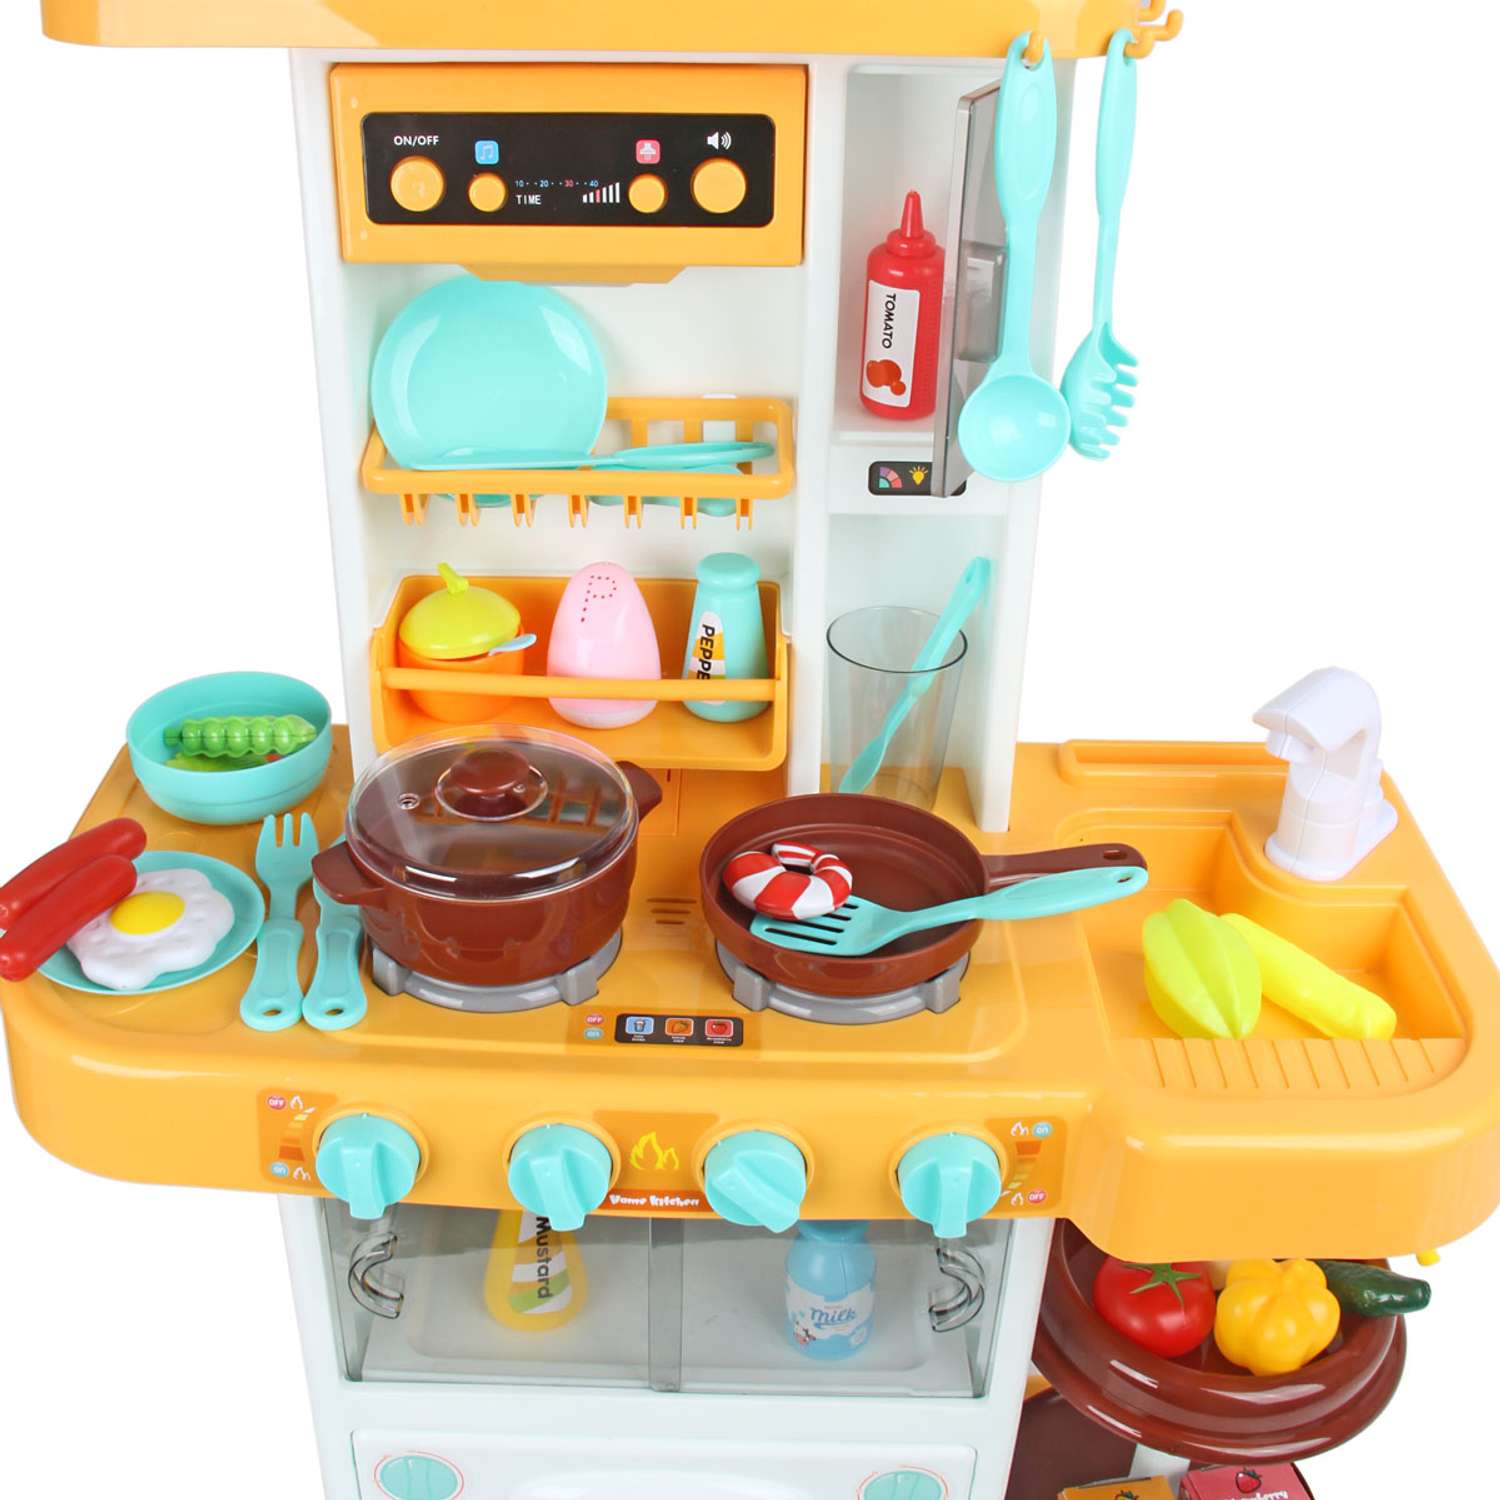 Детская кухня Veld Co Свет звук вода плита духовка вытяжка посуда продукты 38 предметов - фото 3